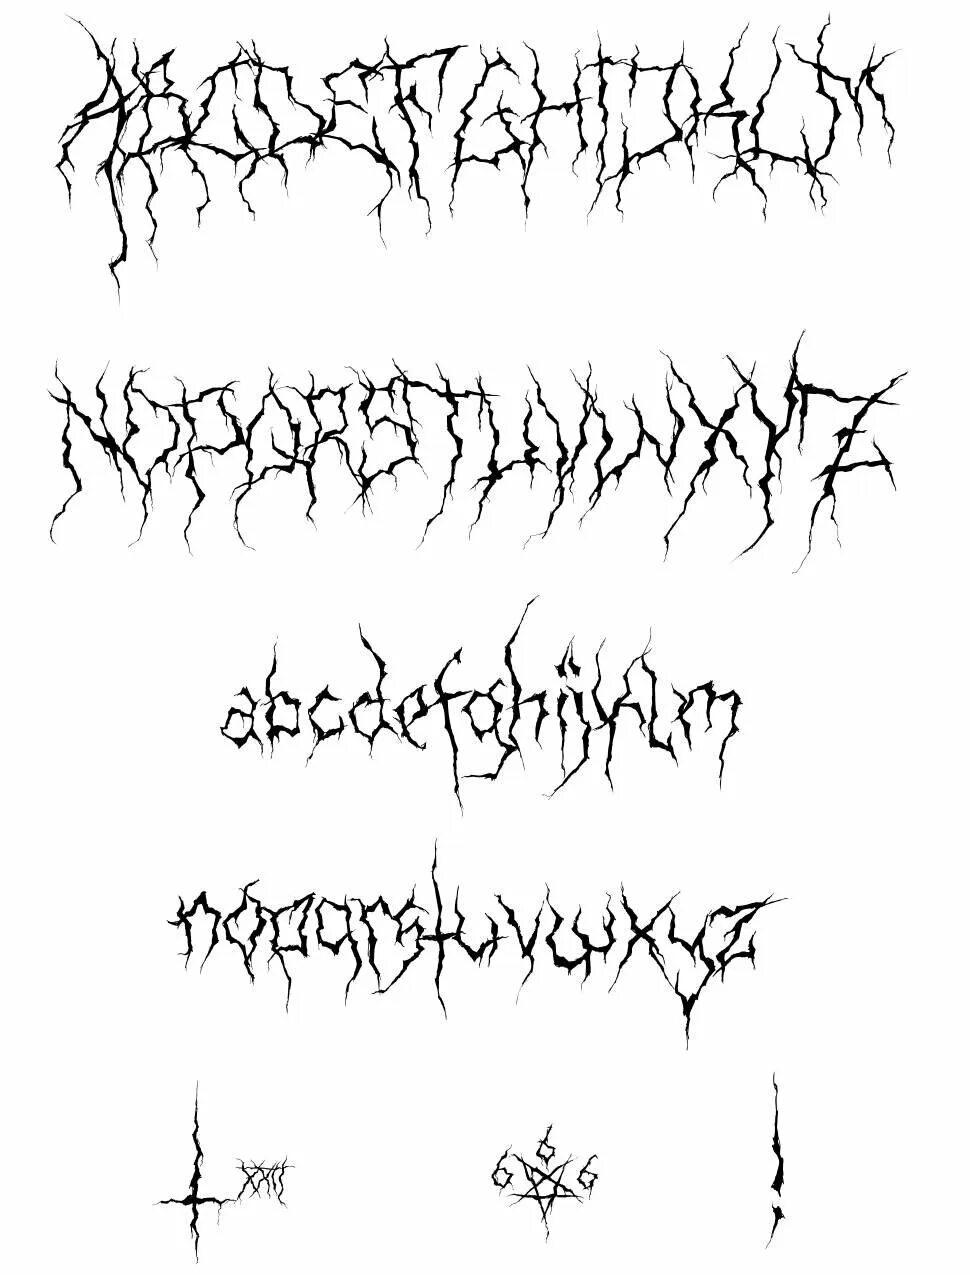 Ghastly panic шрифт для кап. XXII Ultimate Black Metal шрифт. Ghastly Panic шрифт. Блэк метал алфавит. Шрифт в стиле металл.